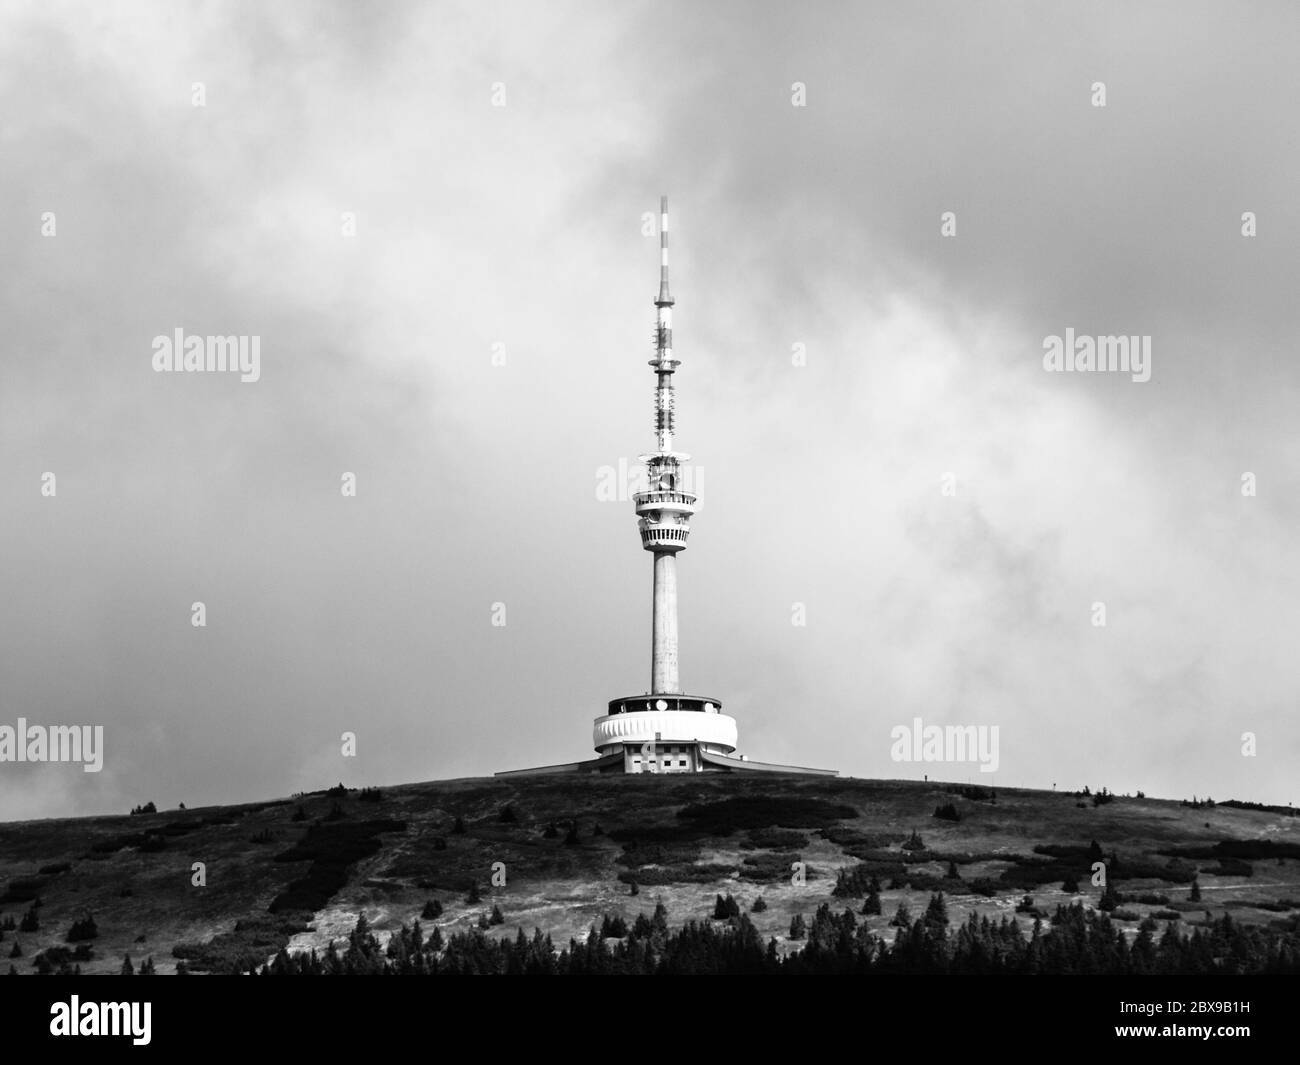 Transmisor de televisión y torre mirador en la cumbre de la Montaña Pradada, Hruby Jesenik, República Checa. Imagen en blanco y negro. Foto de stock